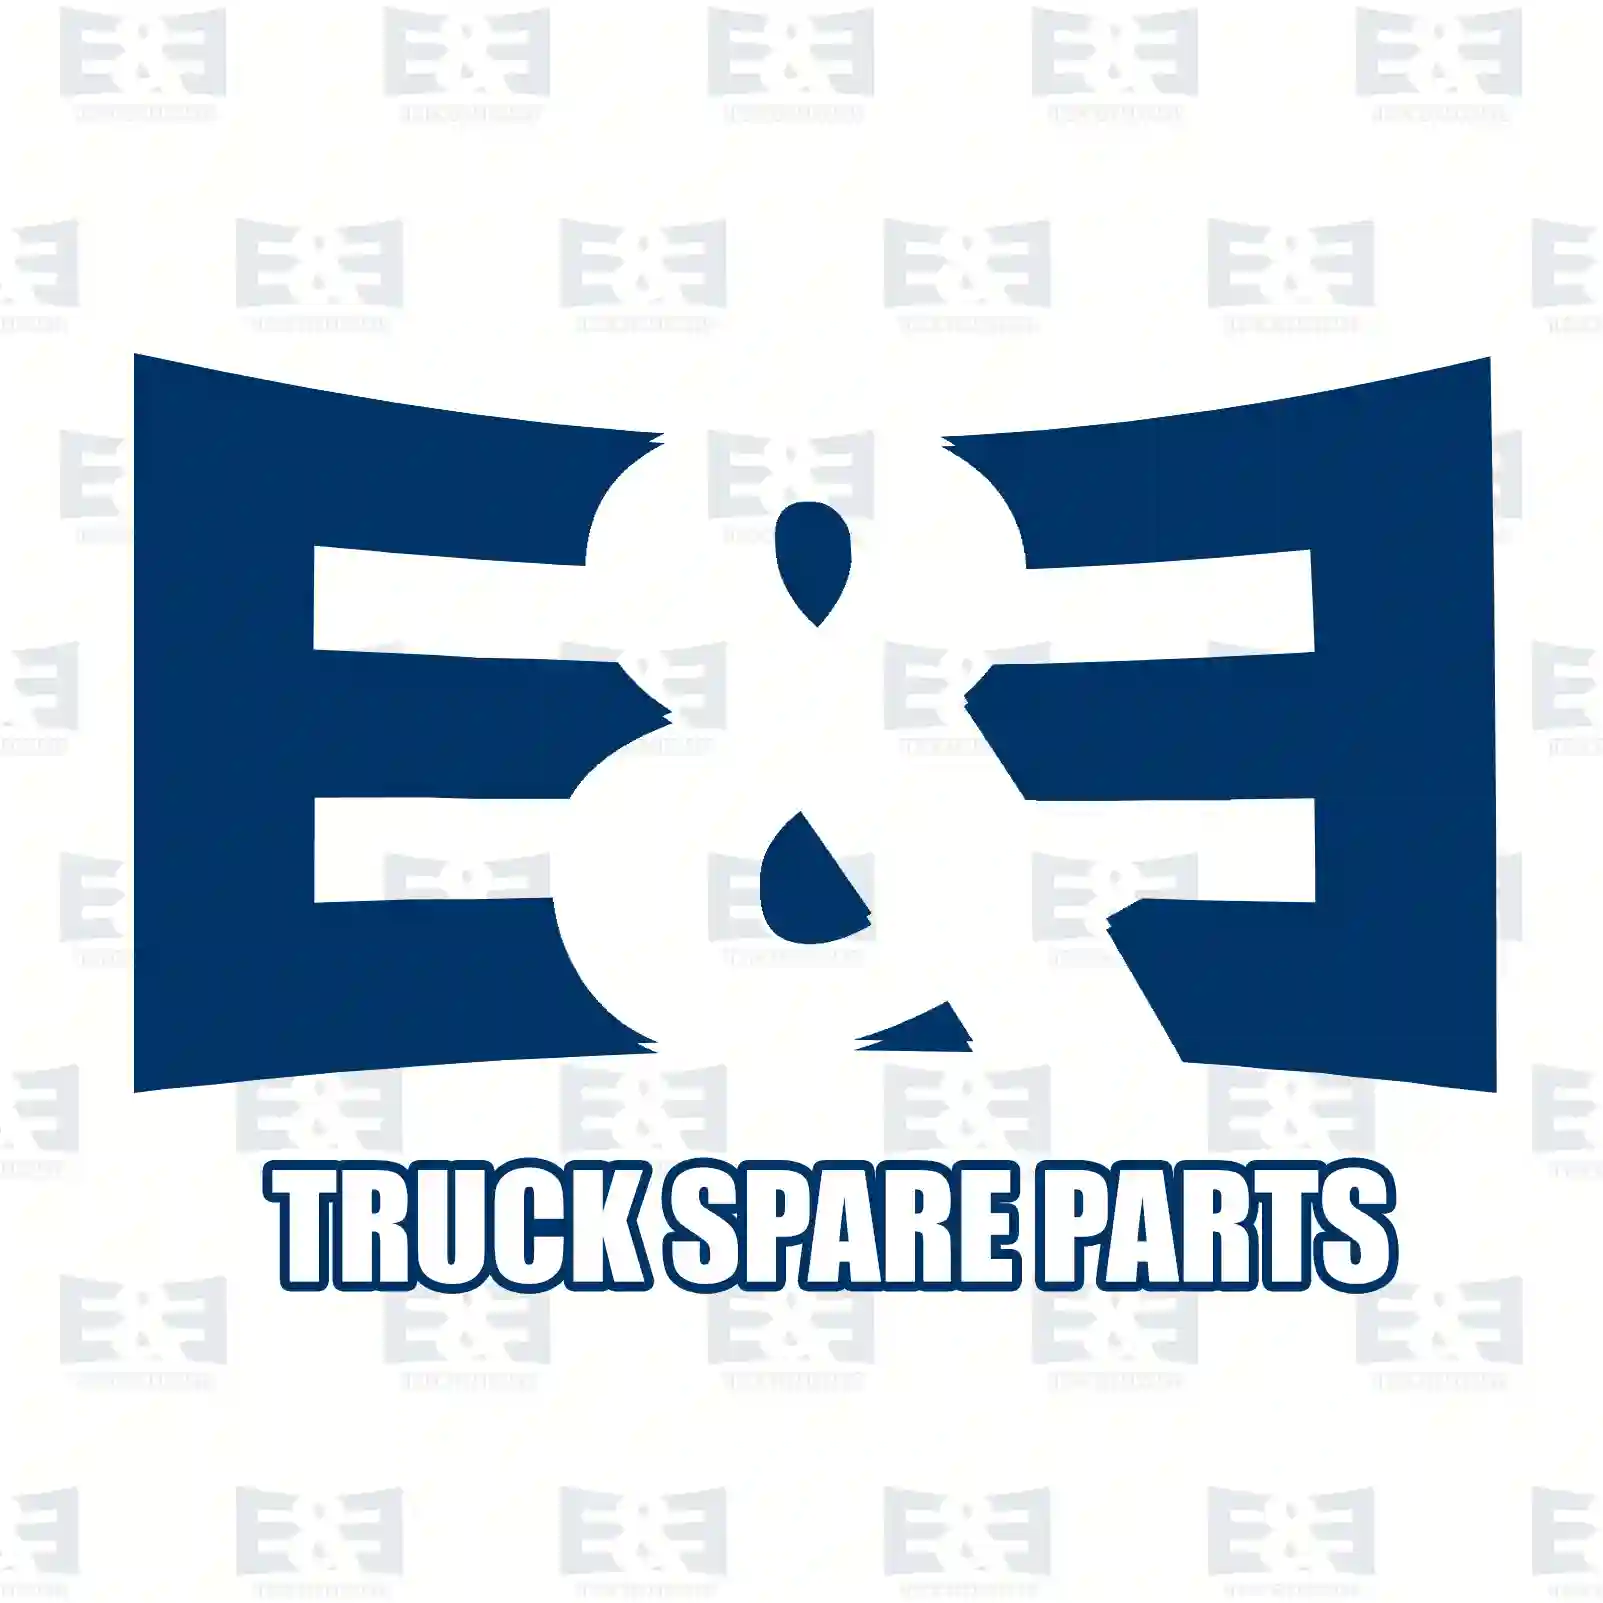 Gear shift knob, 2E2277842, 1285259, 1833025, ZG30534-0008 ||  2E2277842 E&E Truck Spare Parts | Truck Spare Parts, Auotomotive Spare Parts Gear shift knob, 2E2277842, 1285259, 1833025, ZG30534-0008 ||  2E2277842 E&E Truck Spare Parts | Truck Spare Parts, Auotomotive Spare Parts